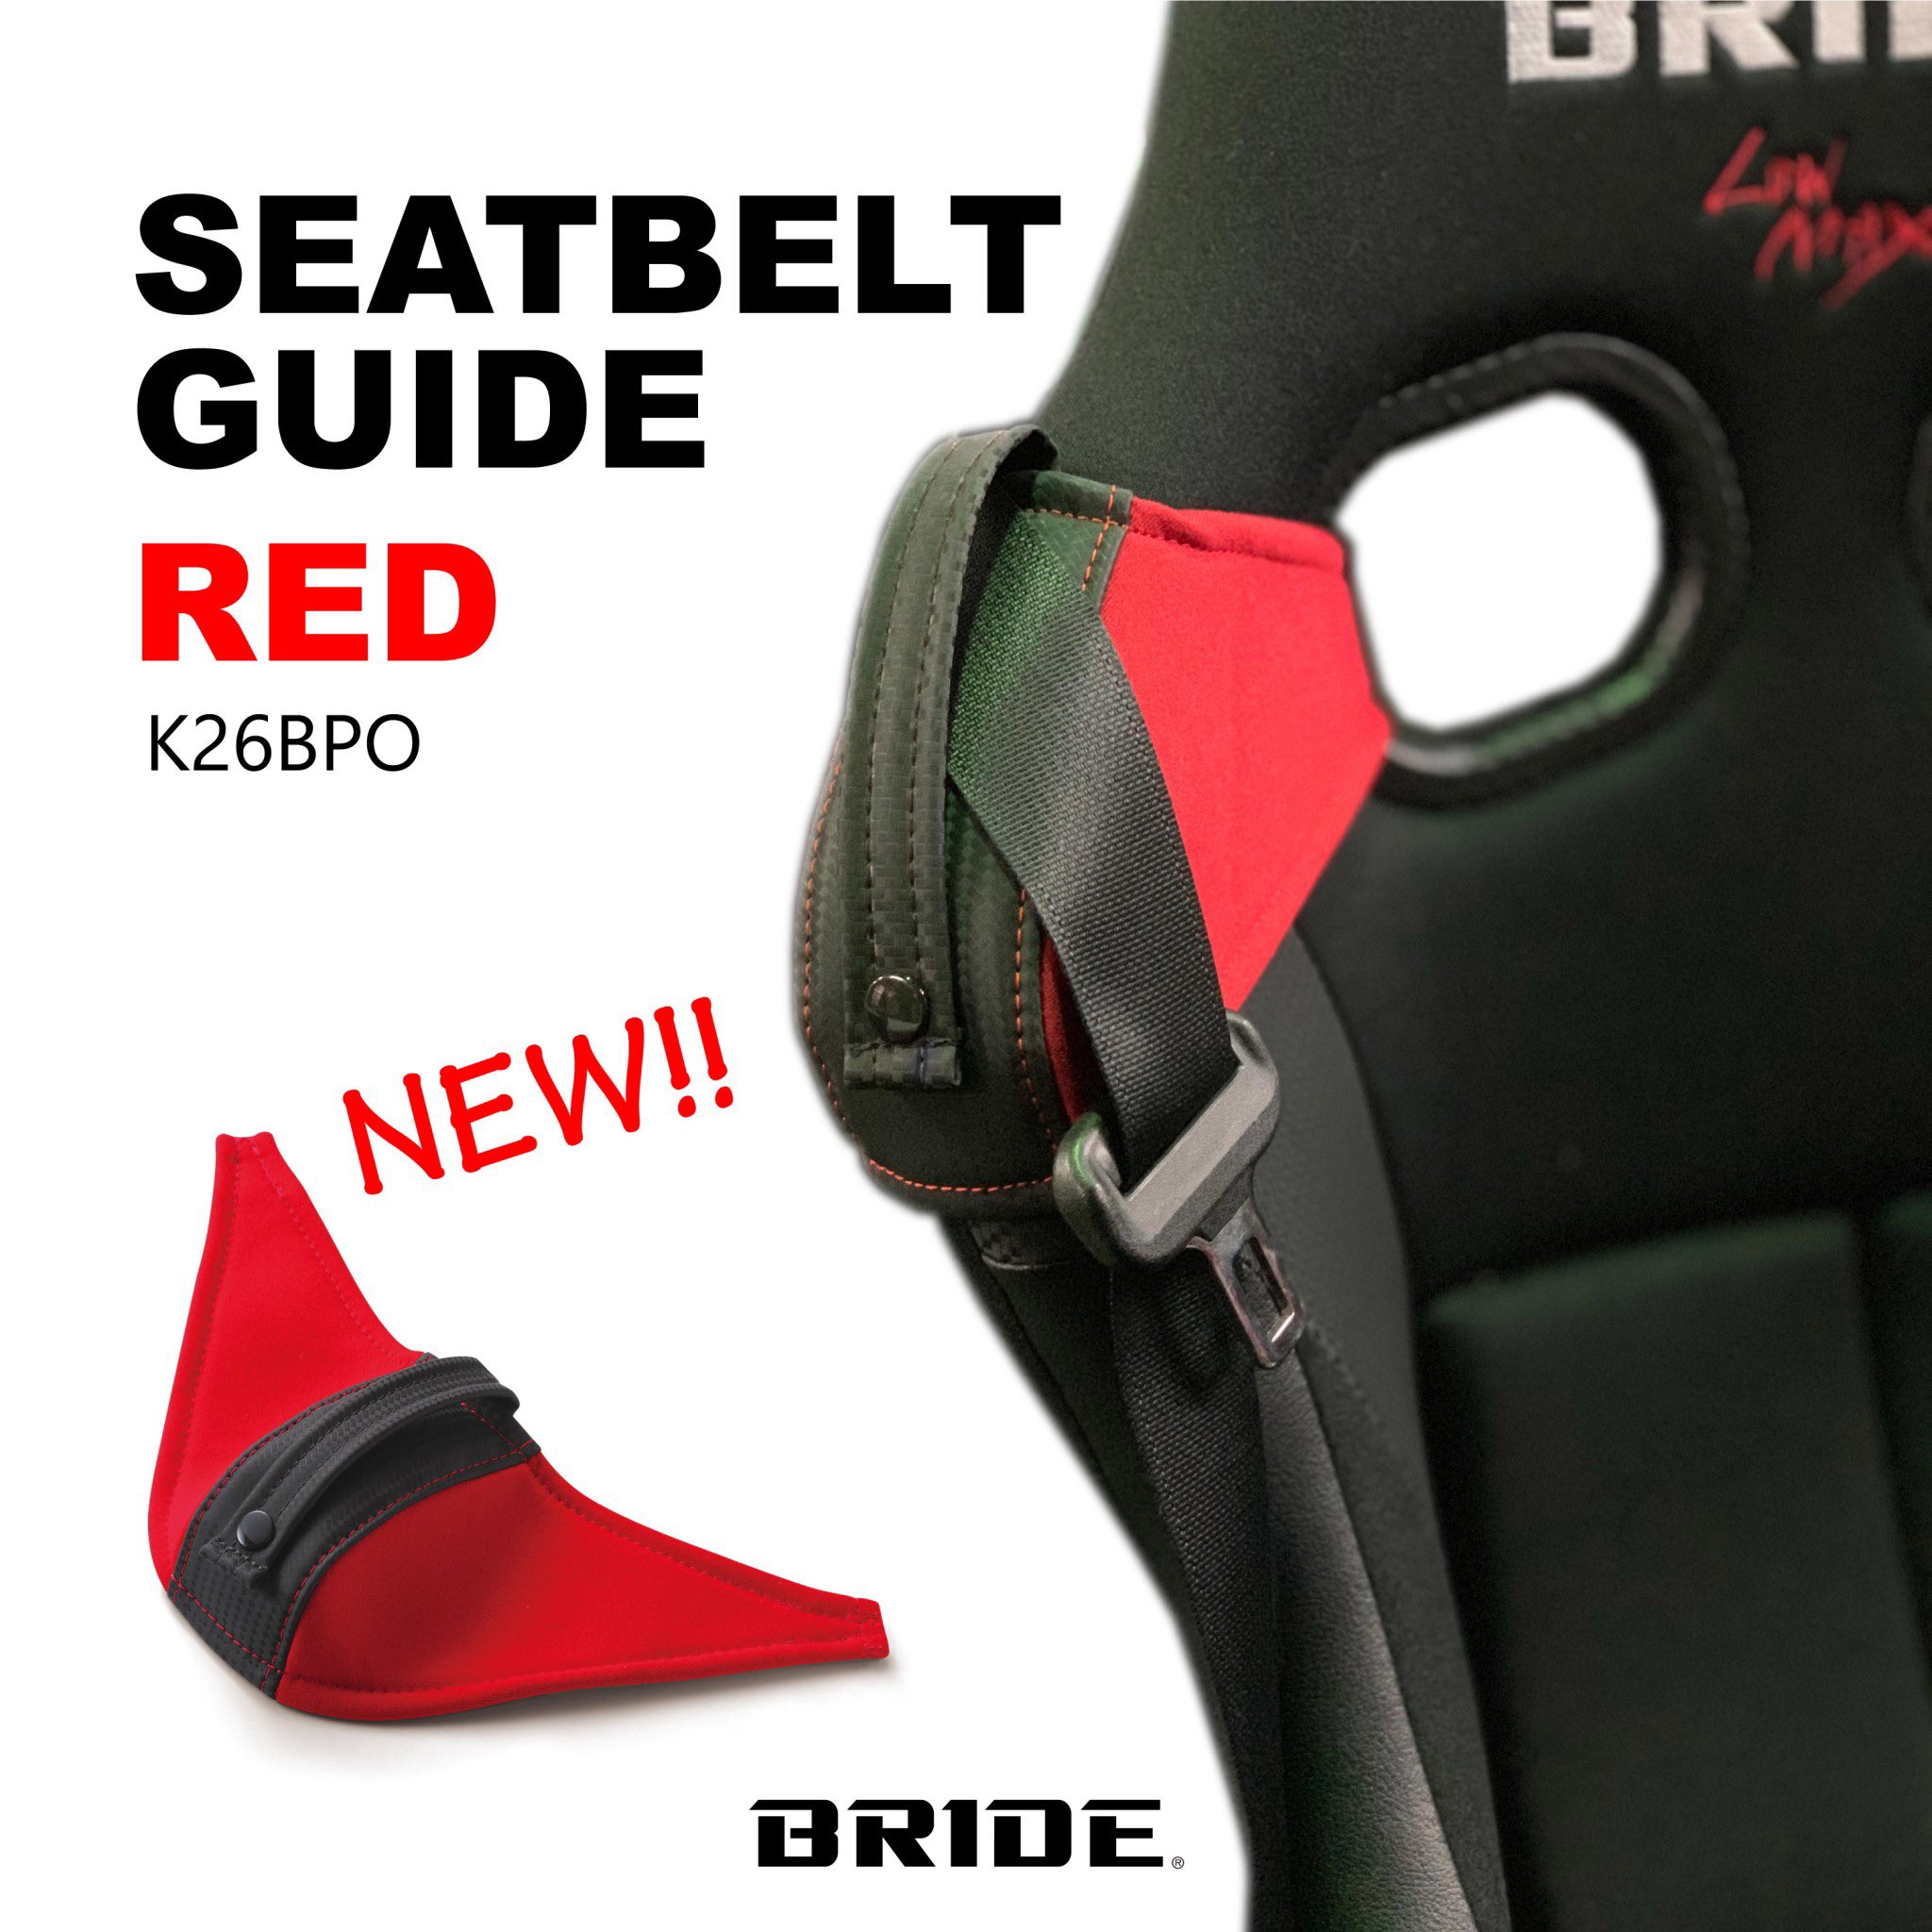 特価キャンペーン ブリッド BRIDE シートベルトガイド K26APO ブラック K26BPO レッド シート擦れ防止 シートベルト保持 フルバケット シート リクライニングシート